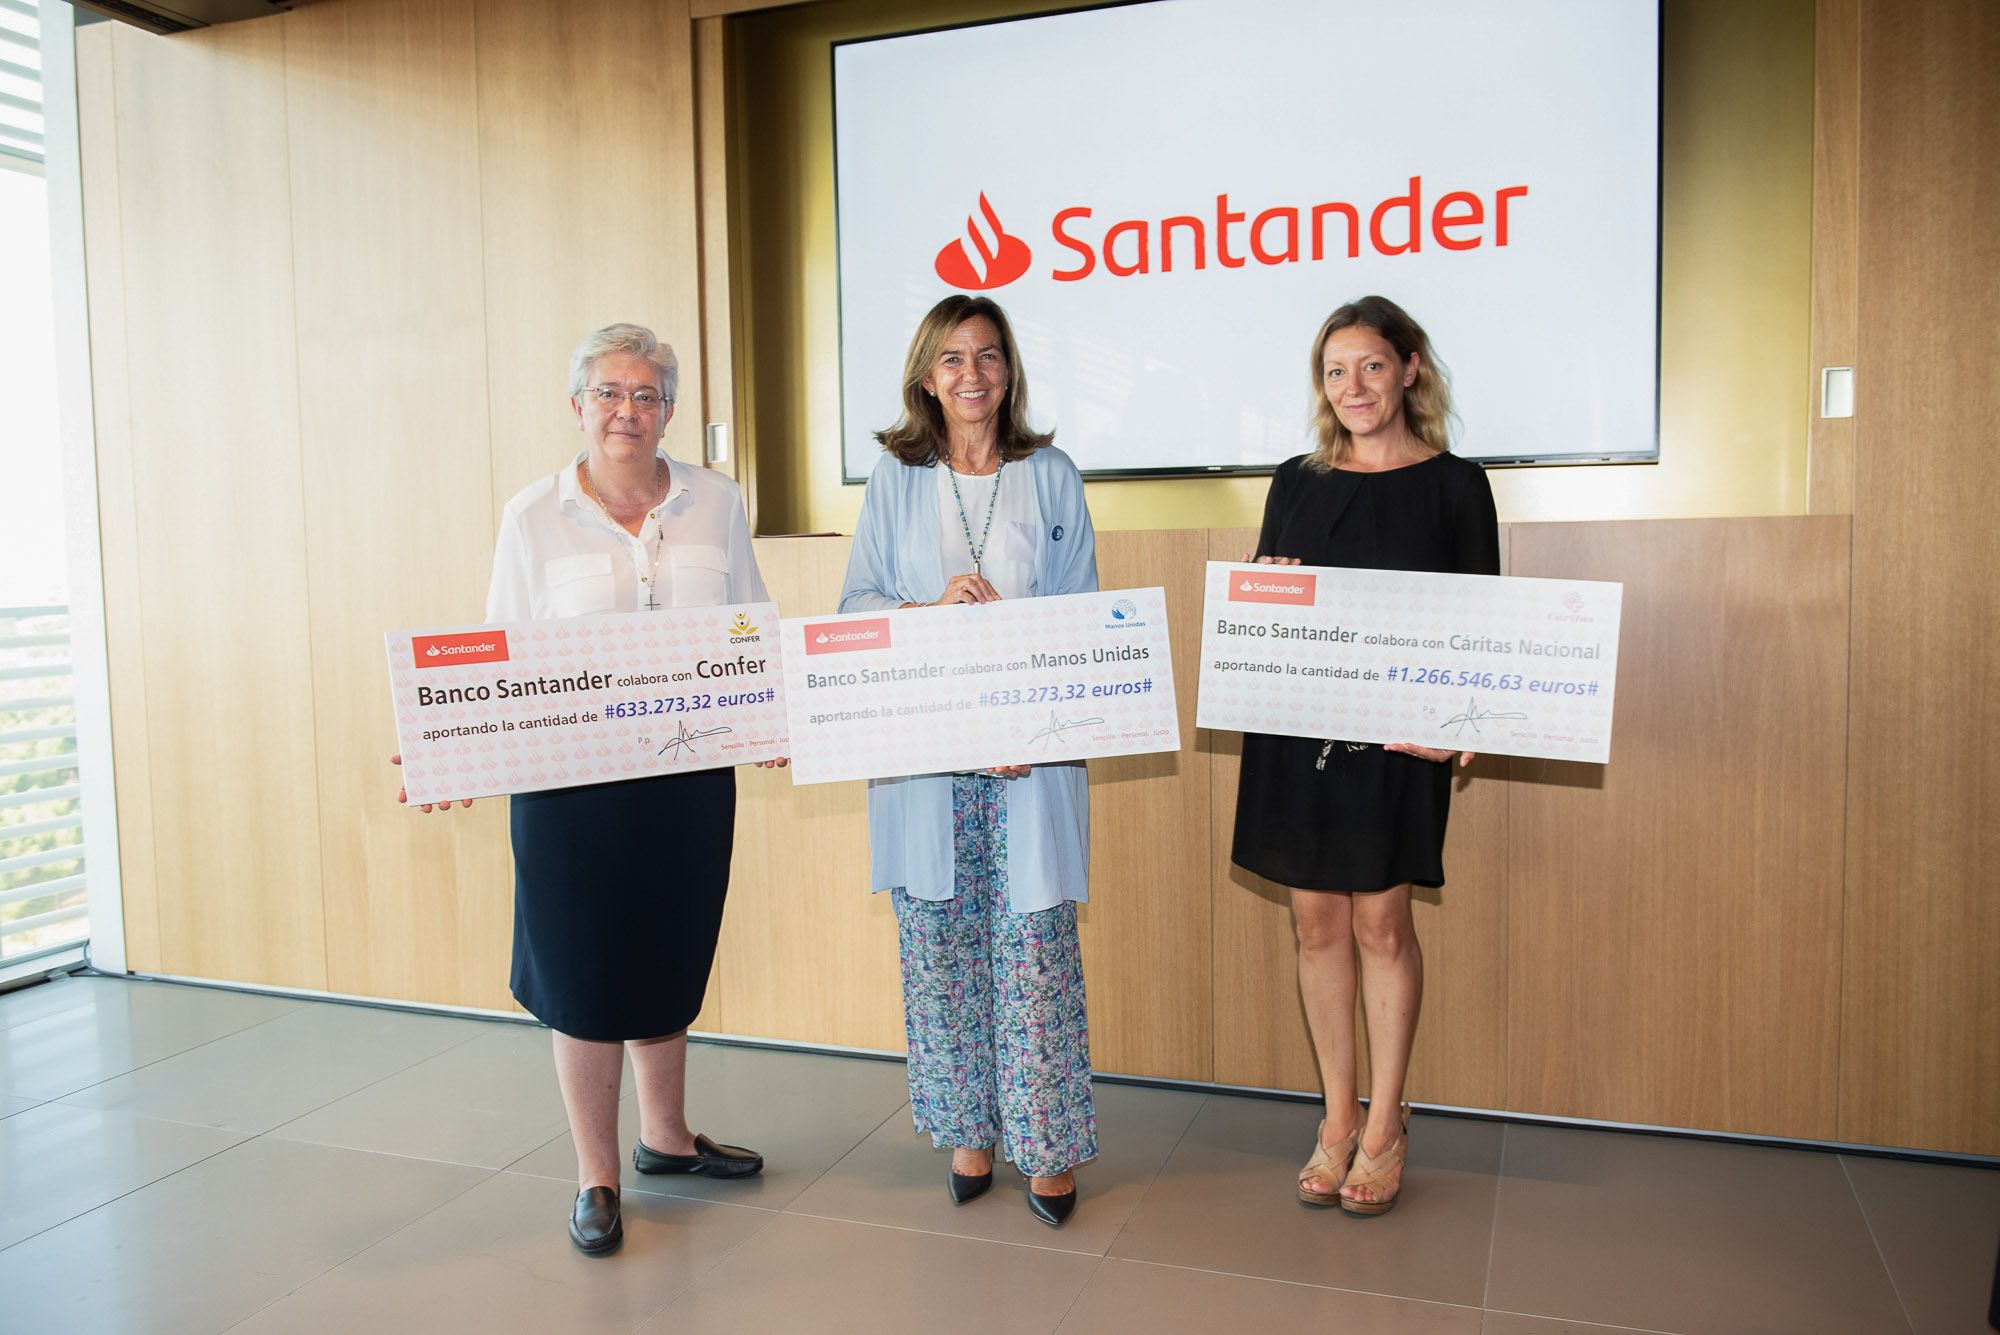 Cáritas y Manos Unidas reciben 633.000 euros cada una del fondo del Santander. Fuente: Banco Santander